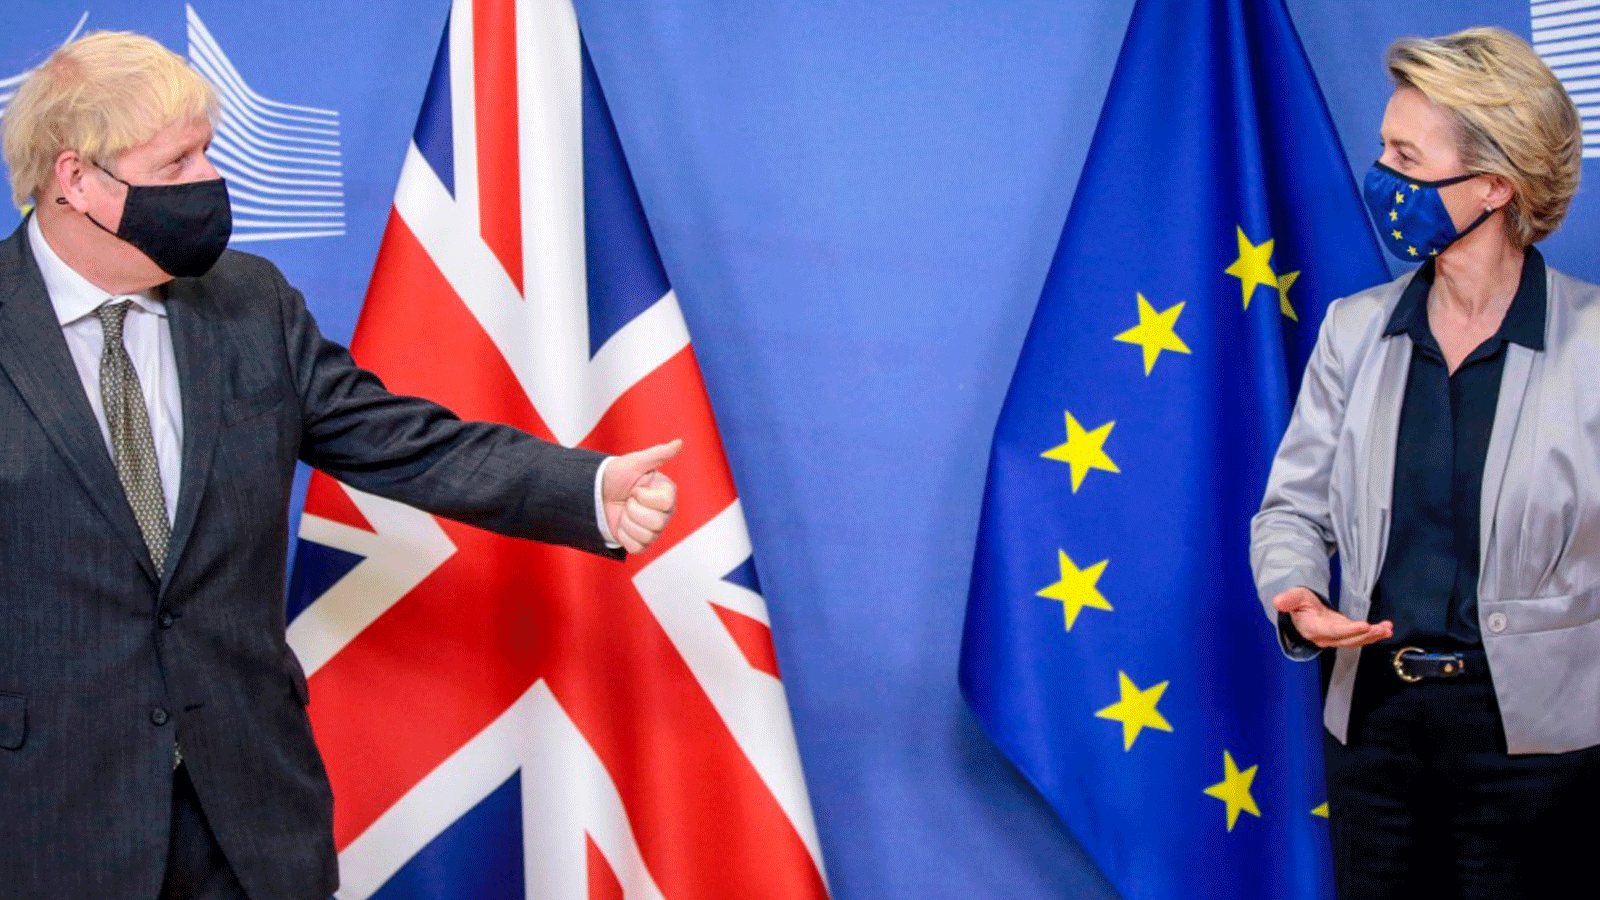 رئيس الوزراء البريطاني بوريس جونسون ورئيسة المفوضية الأوروبية أورسولا فون دير لاين بعد محادثات خروج بريطانيا من الاتحاد الأوروبي في مقر الاتحاد الأوروبي في بروكسل 9 كانون الأول/ديسمبر 2020